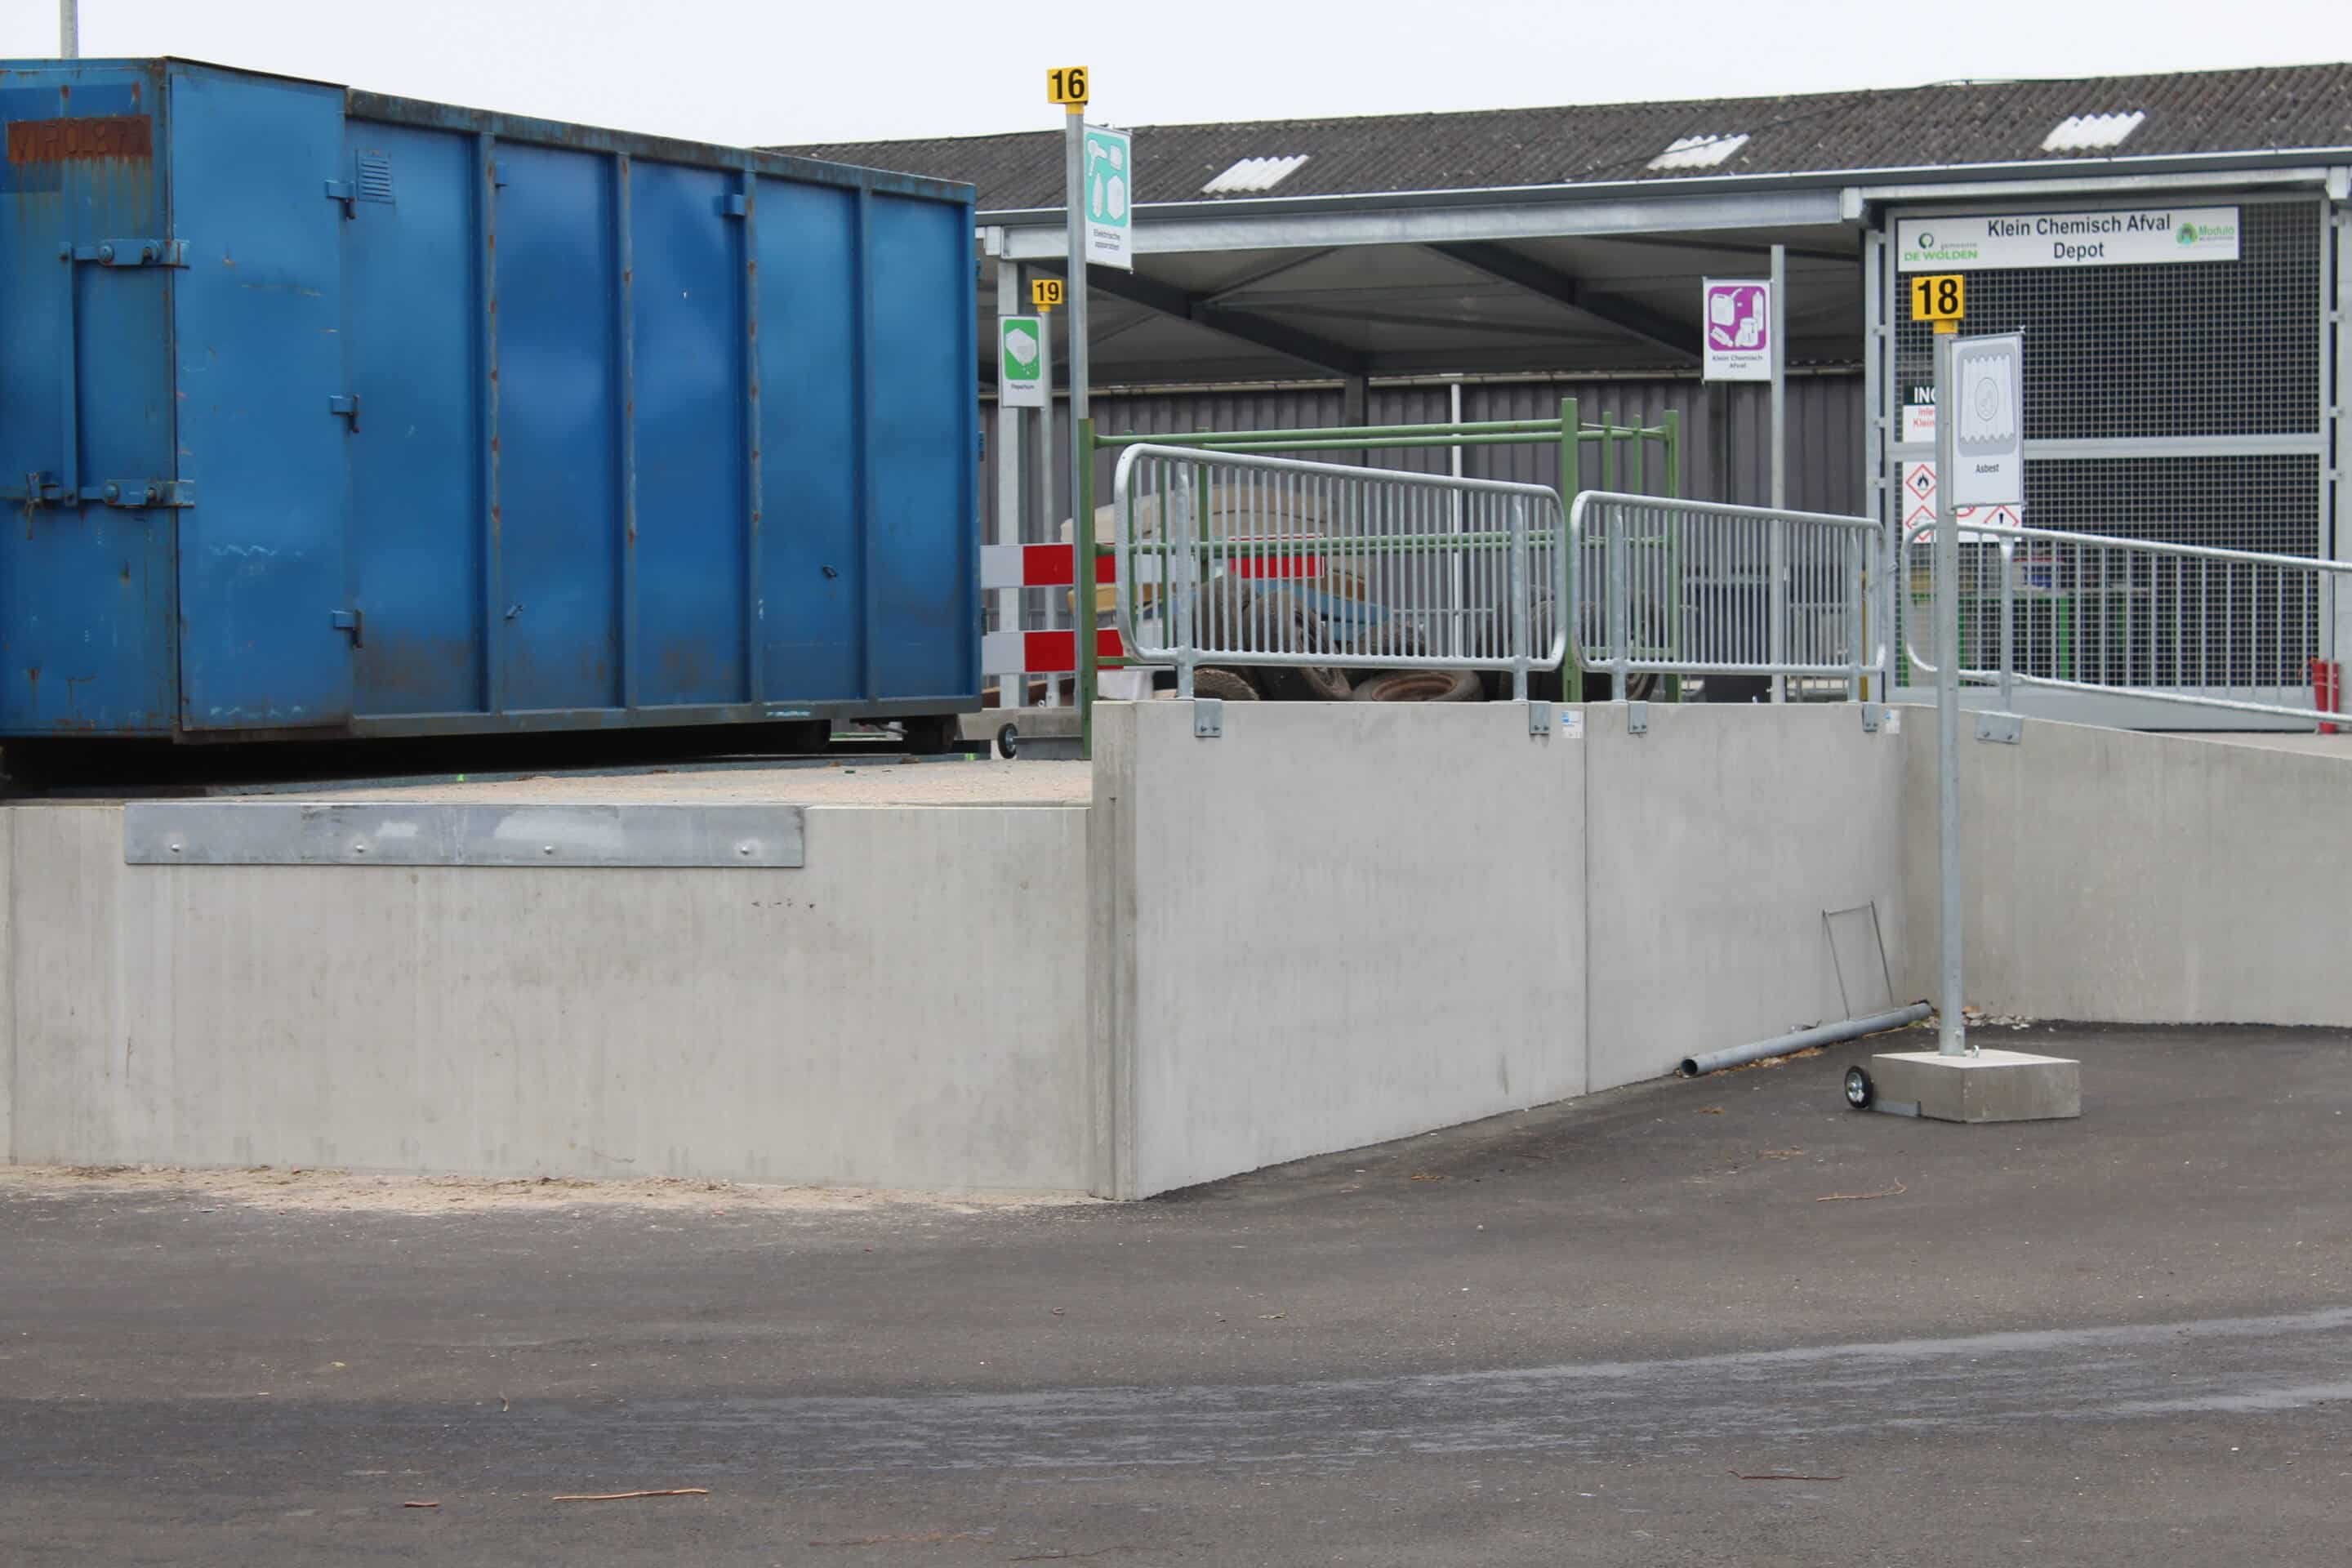 Bosch Beton - Keerwanden voor nieuwe milieustraat in Zuidwolde